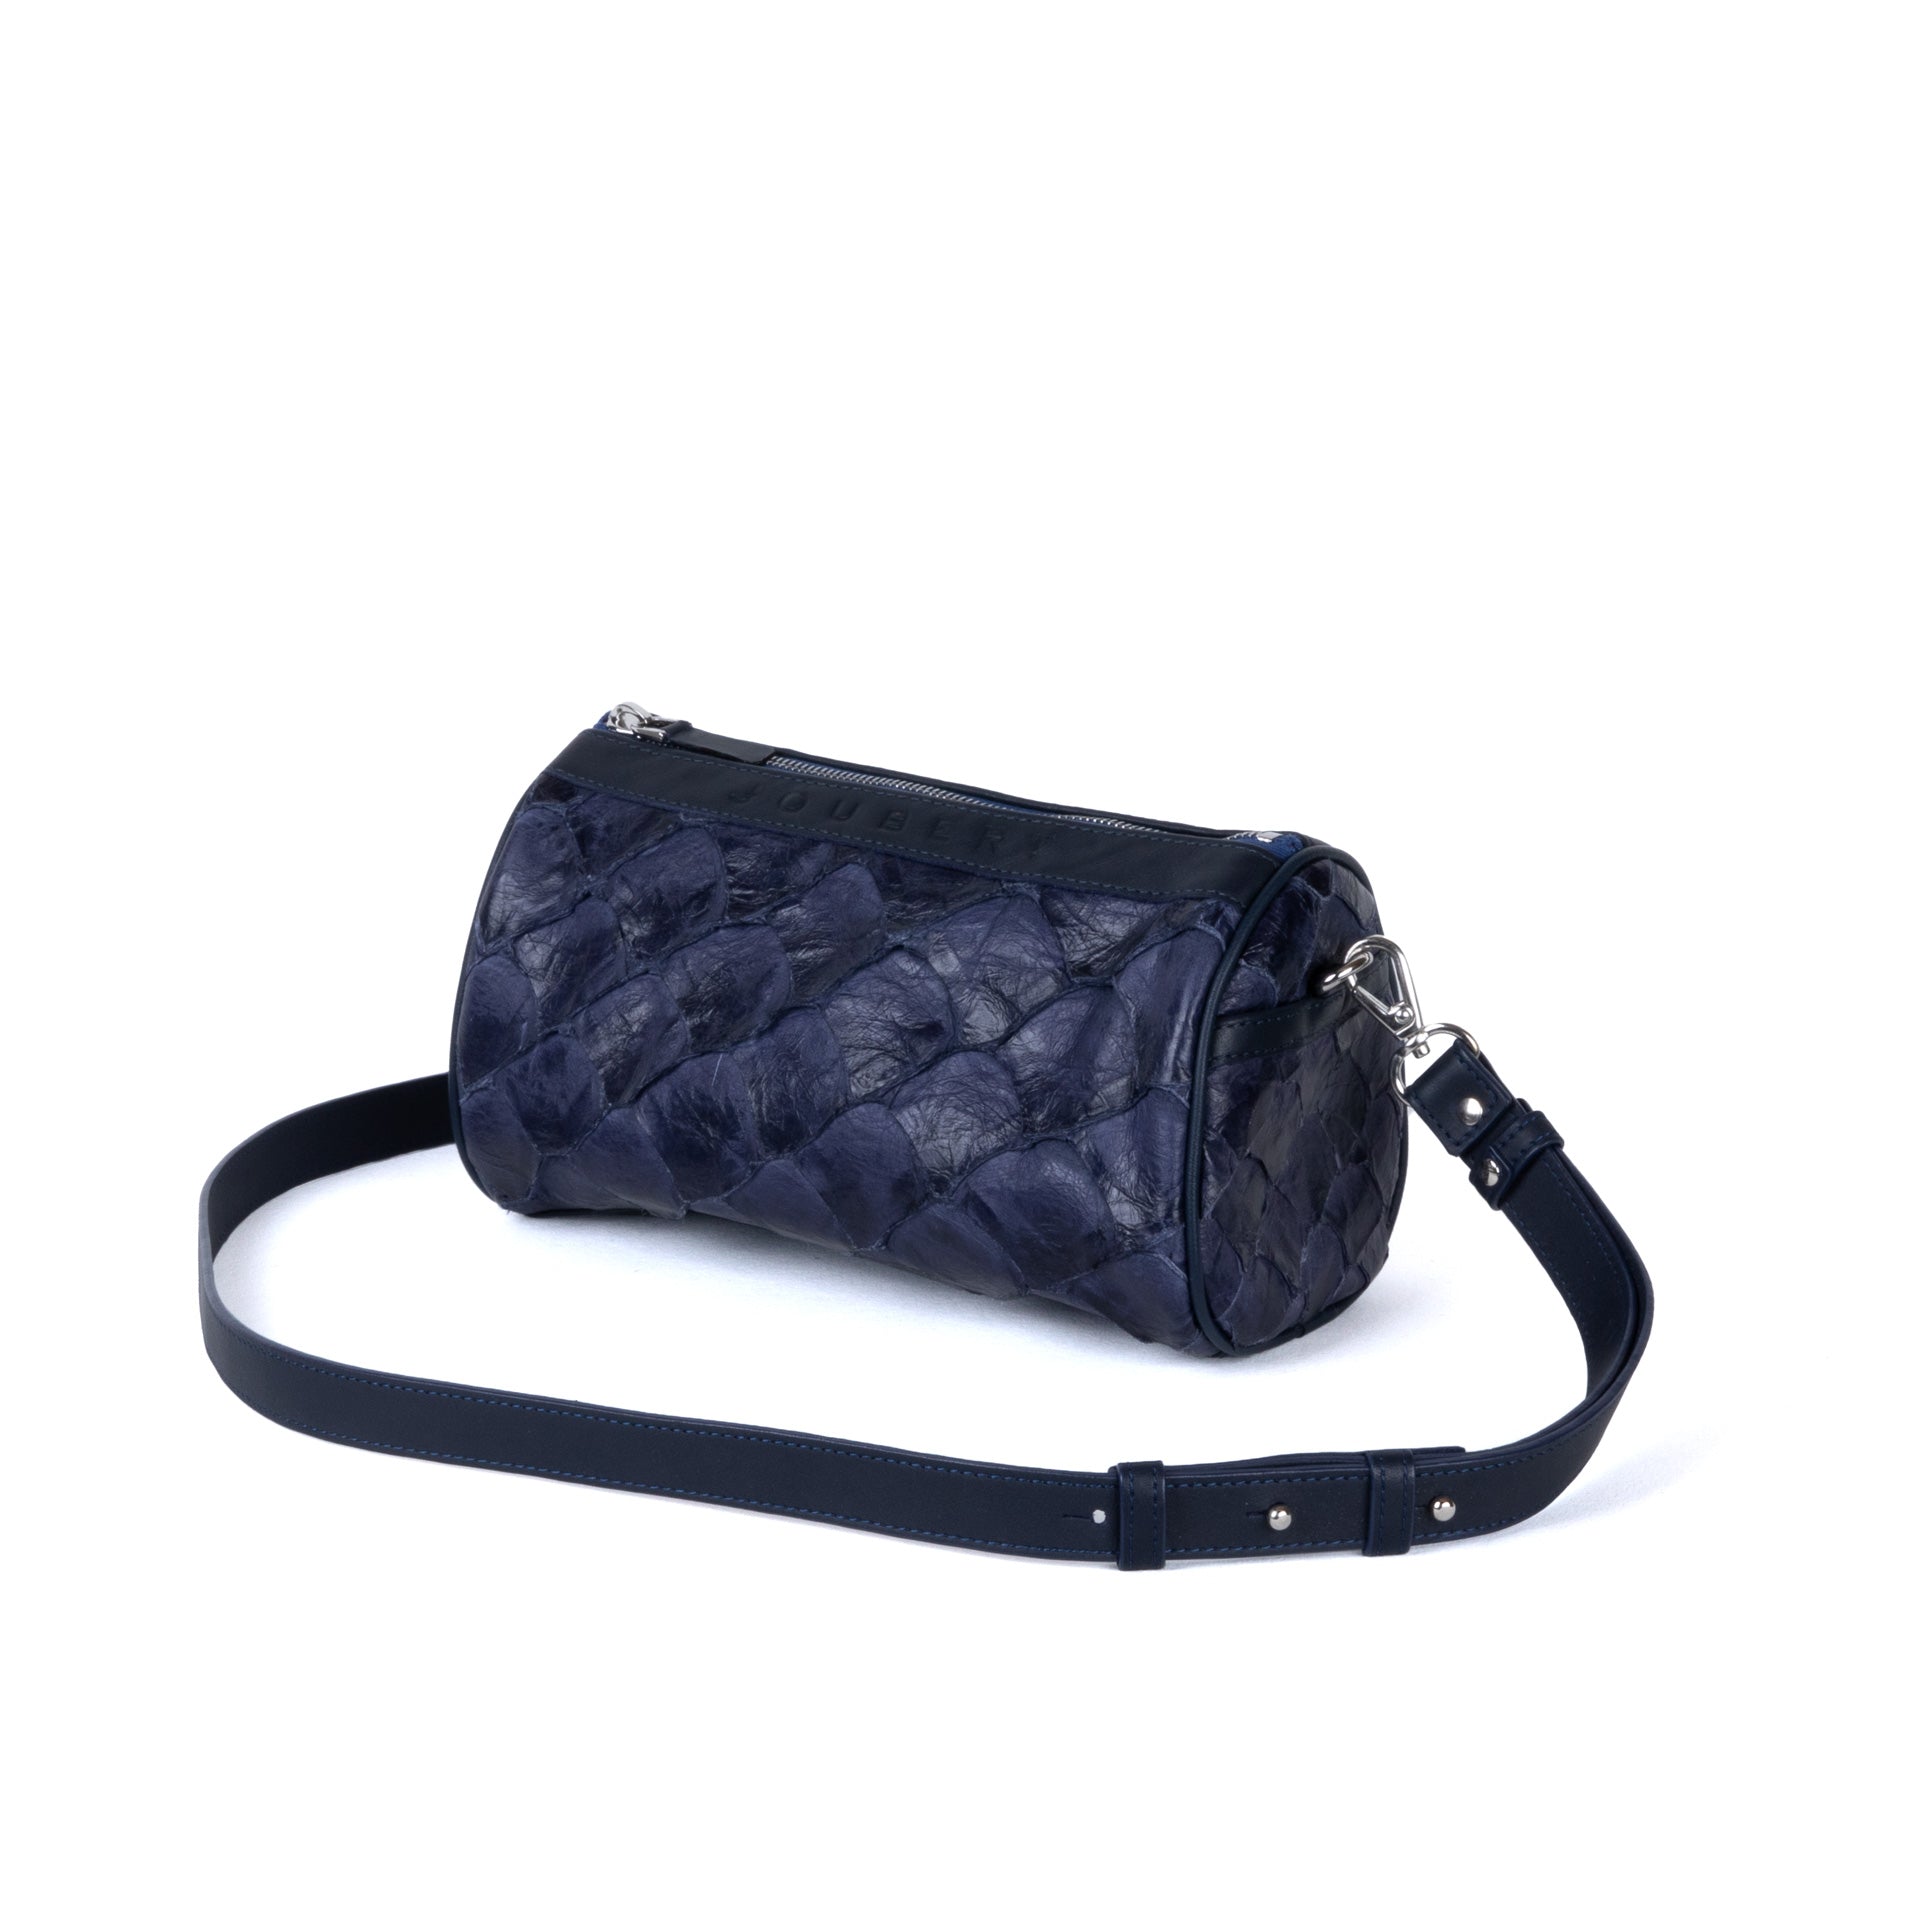 Bag 22 - Arapaima Leather